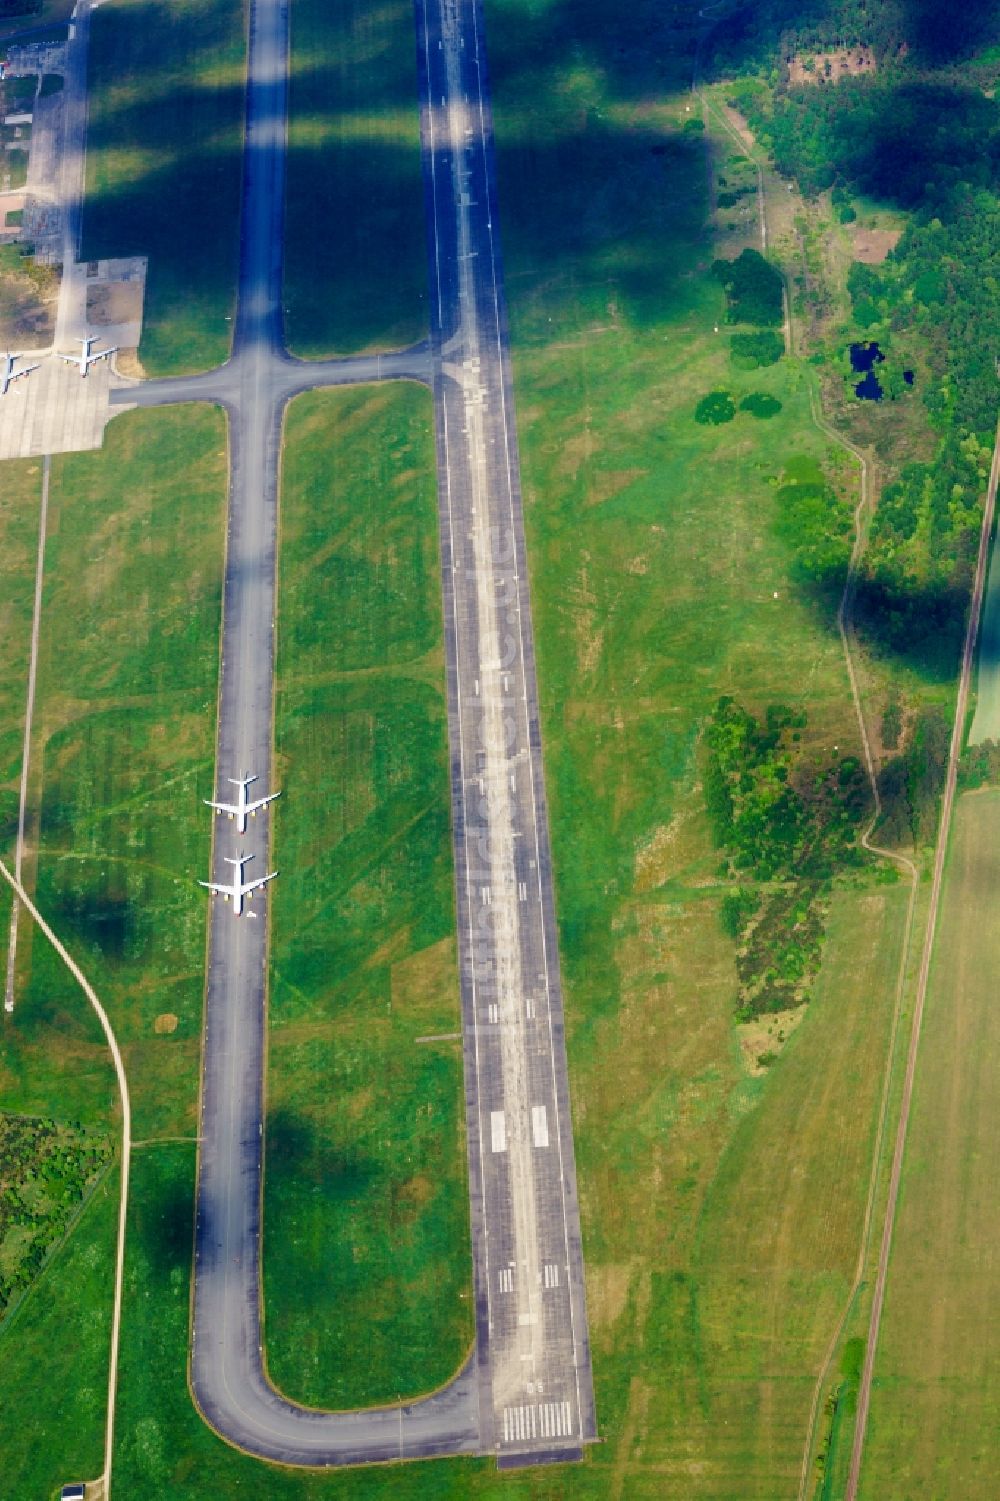 Parchim aus der Vogelperspektive: Abgestellte Airbus A340 Passagierflugzeuge auf dem Rollweg des Flughafen in Parchim im Bundesland Mecklenburg-Vorpommern, Deutschland